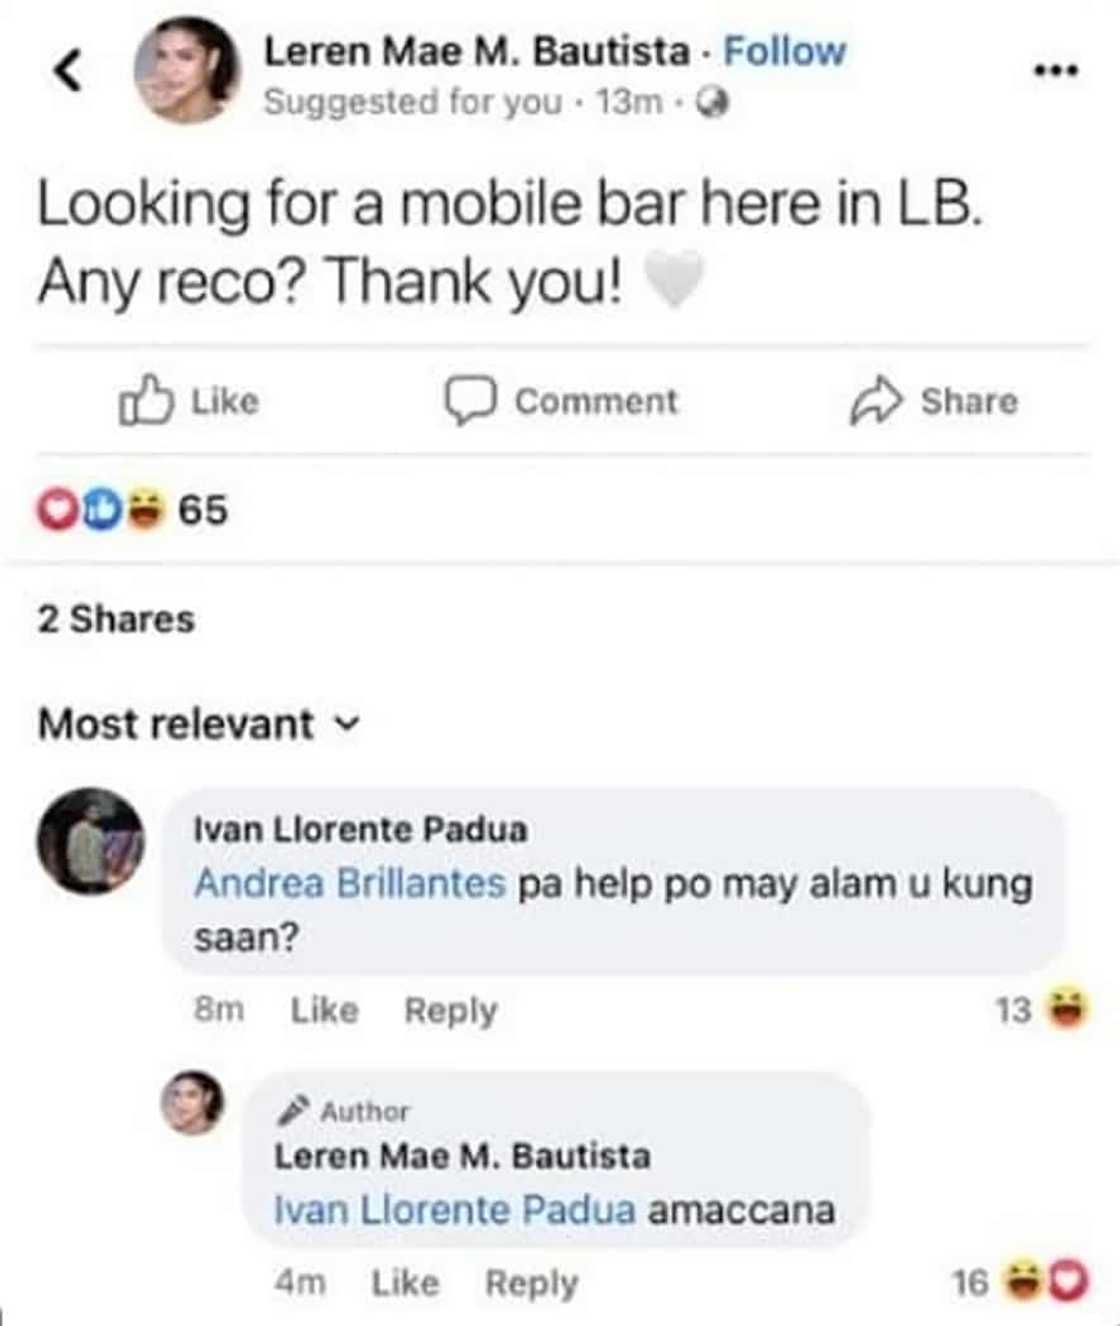 Leren Mae Bautista, niresbakan isang netizen na nag-comment sa kanyang post: “Amaccana”